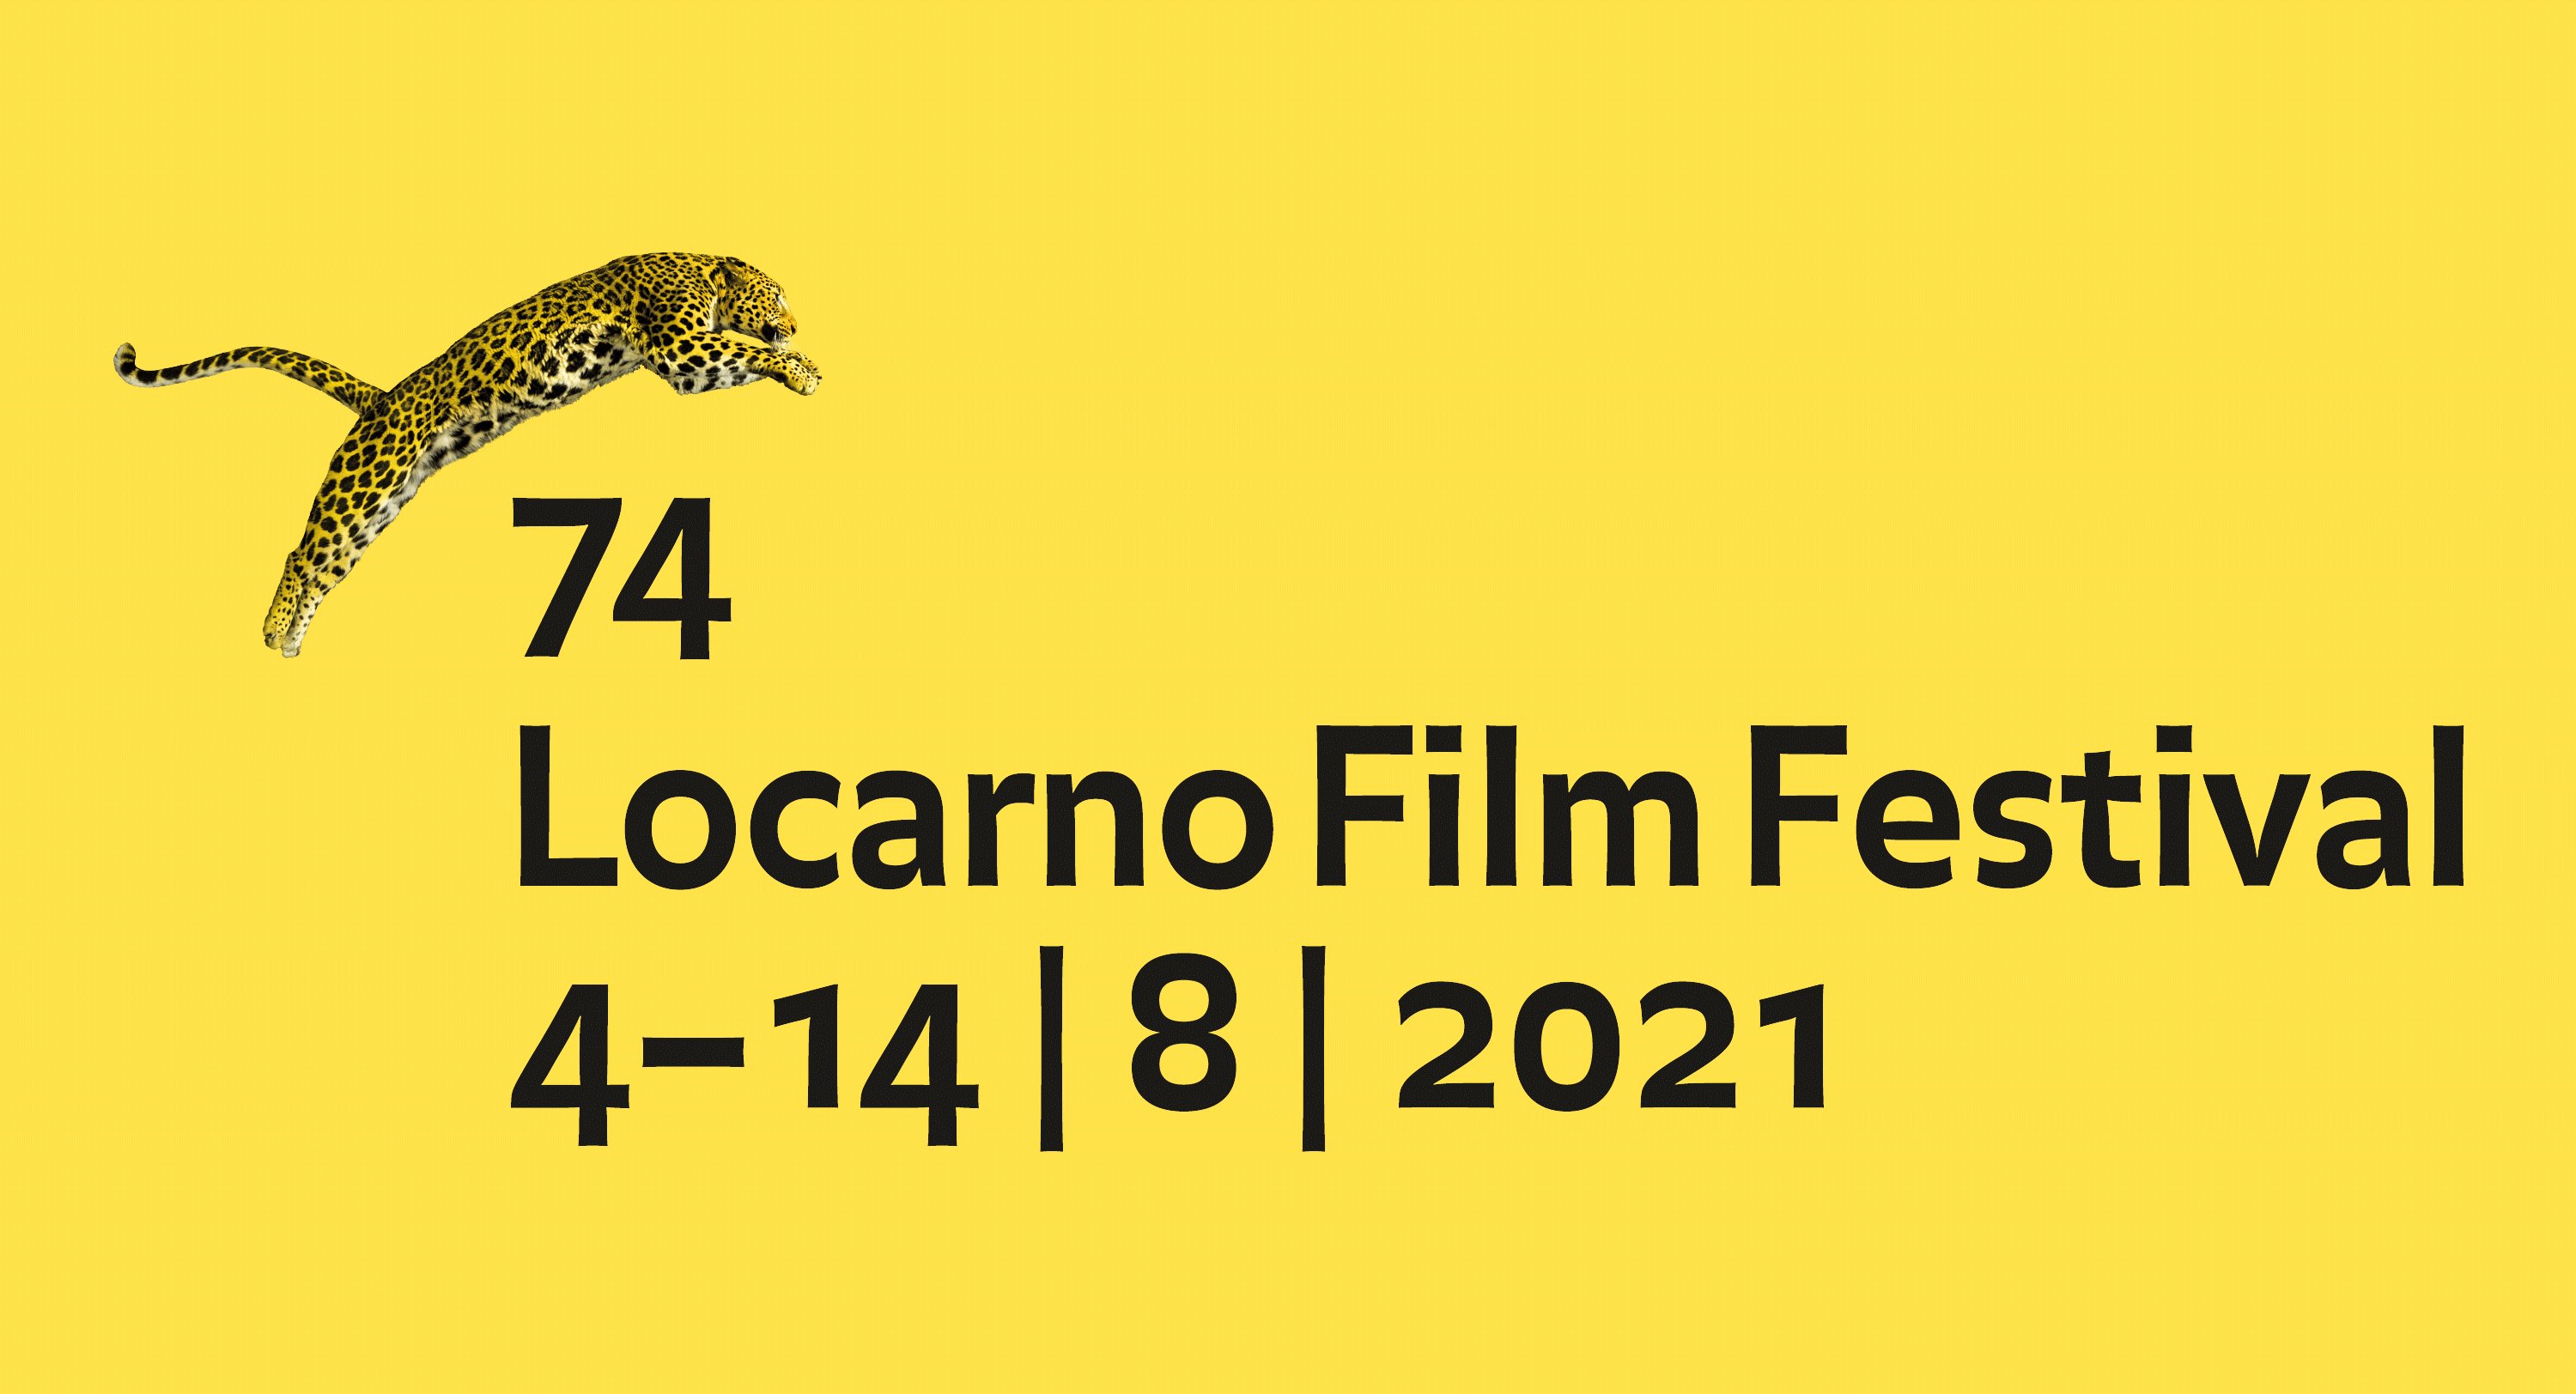 Locarno Film Festival 74 2021